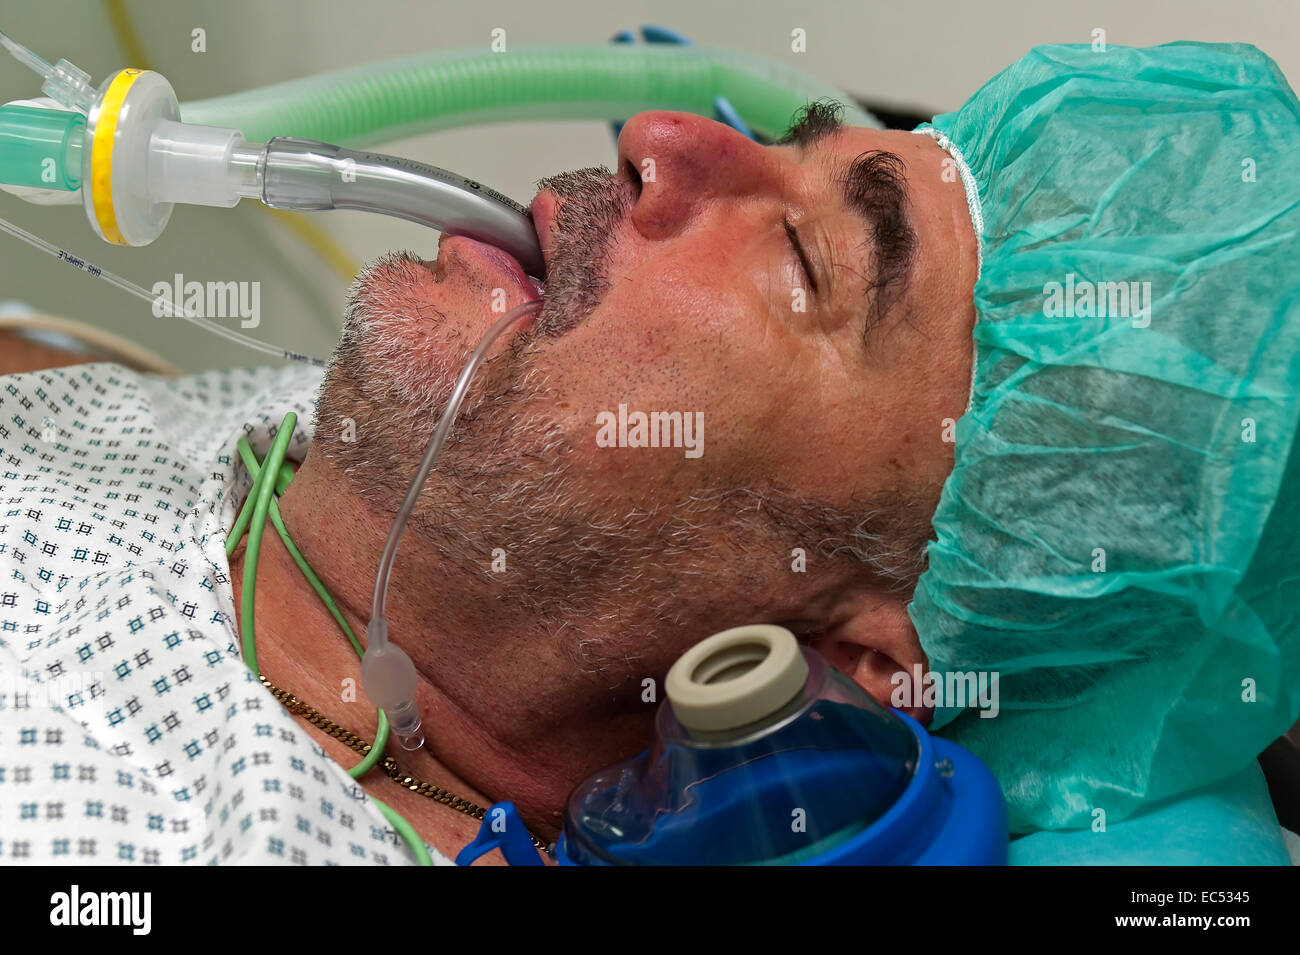 Il paziente è sotto anestesia generale e ventilati meccanicamente con una maschera laringea Foto Stock